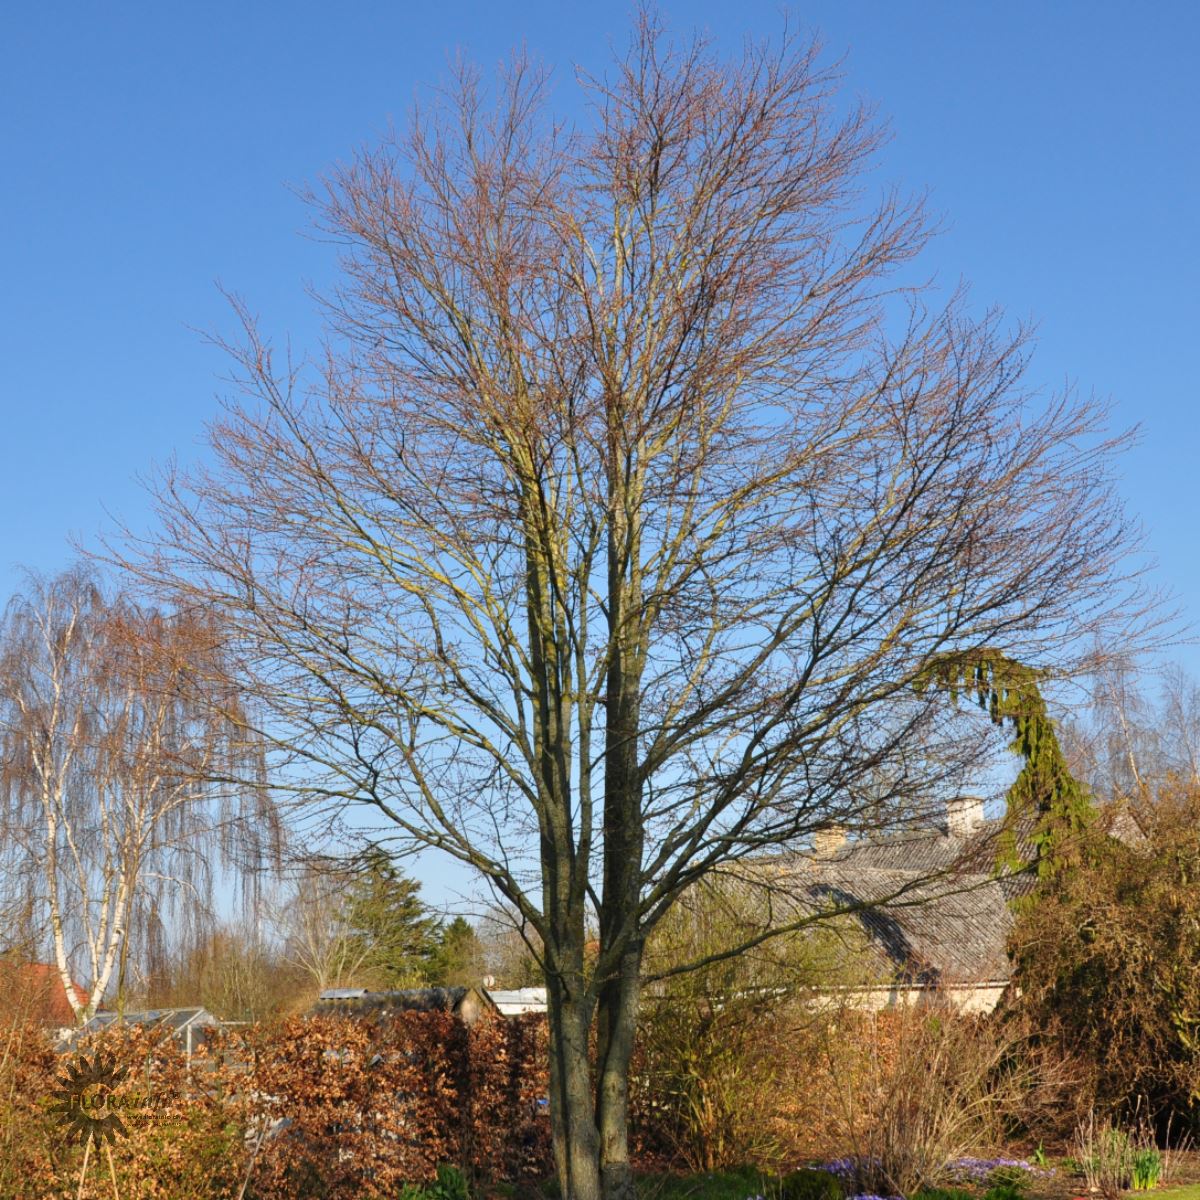 Hjertetræ, også kaldt Katsua, er et løvfældende træ som er pænt om vinteren med klar grenstruktur